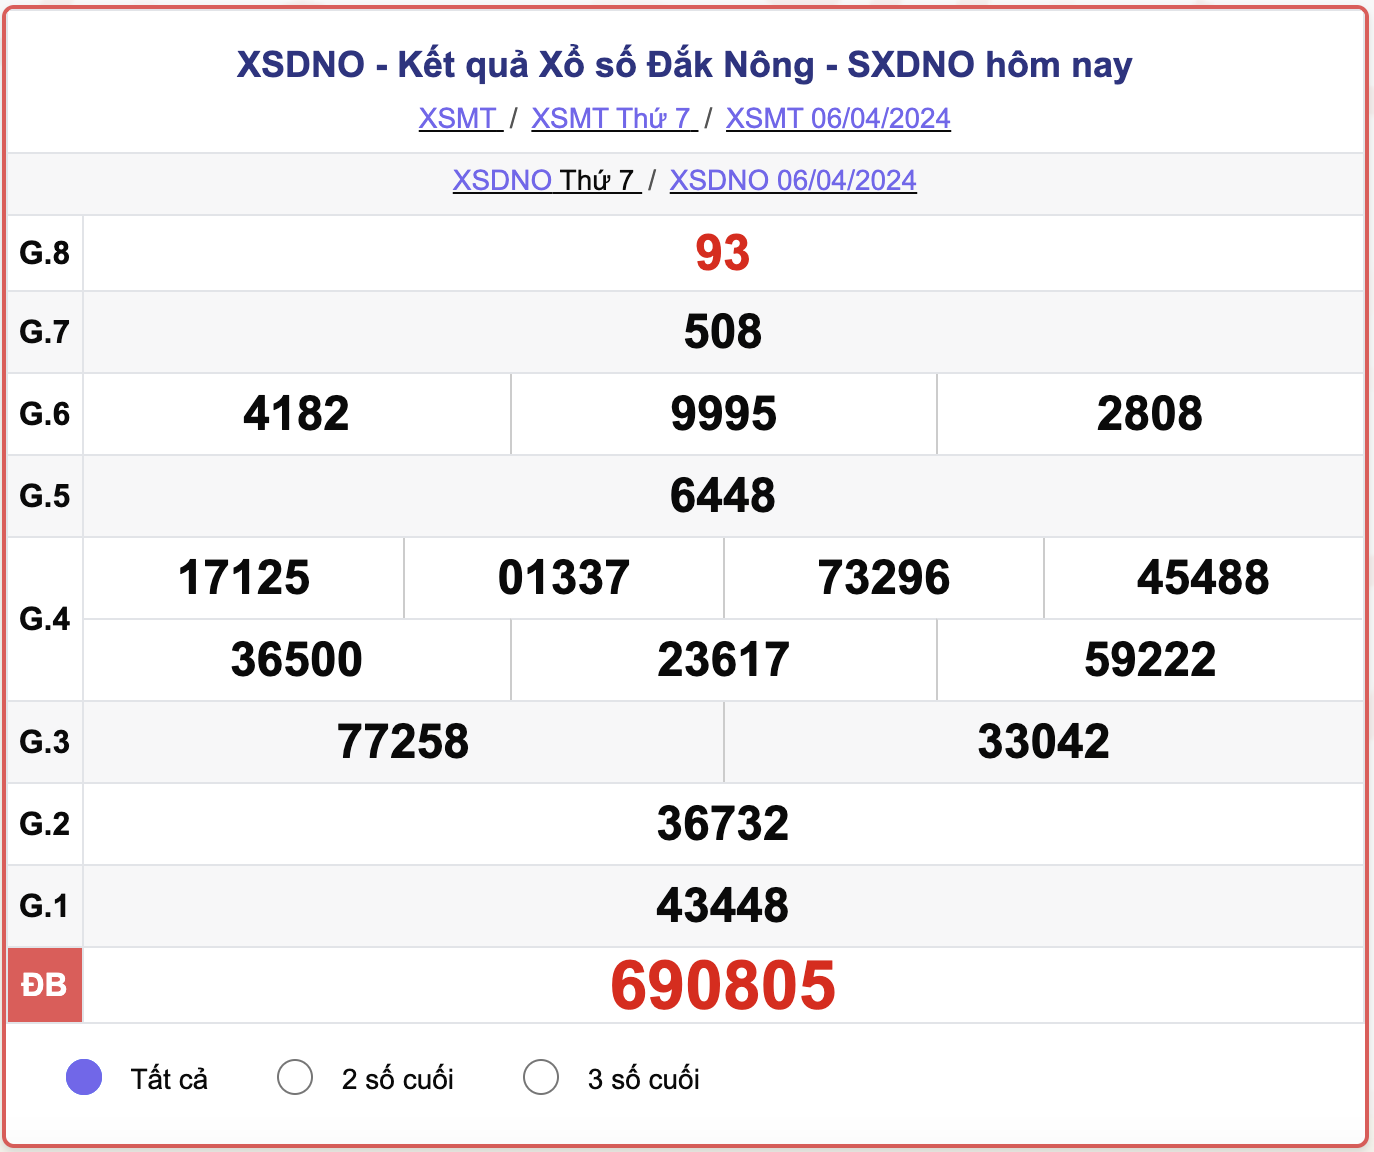 XSDNO thứ 7, kết quả xổ số Đắk Nông ngày 6/4/2024